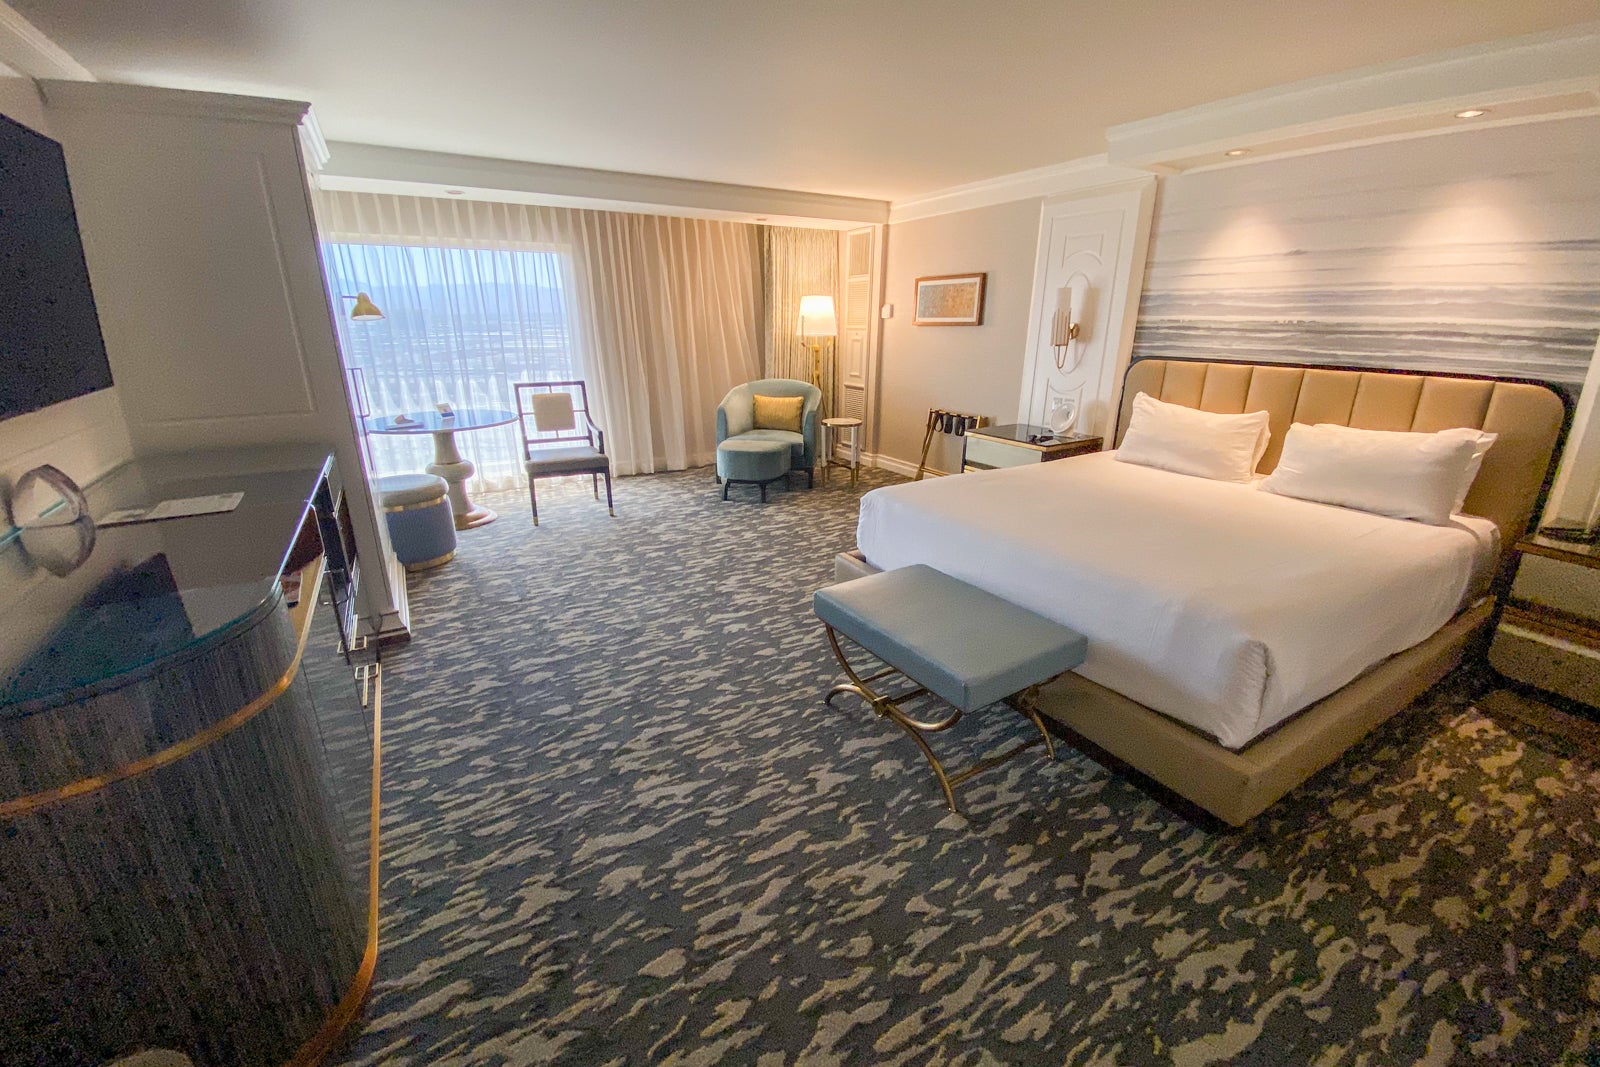 Suites & Rooms at Bellagio, Nevada